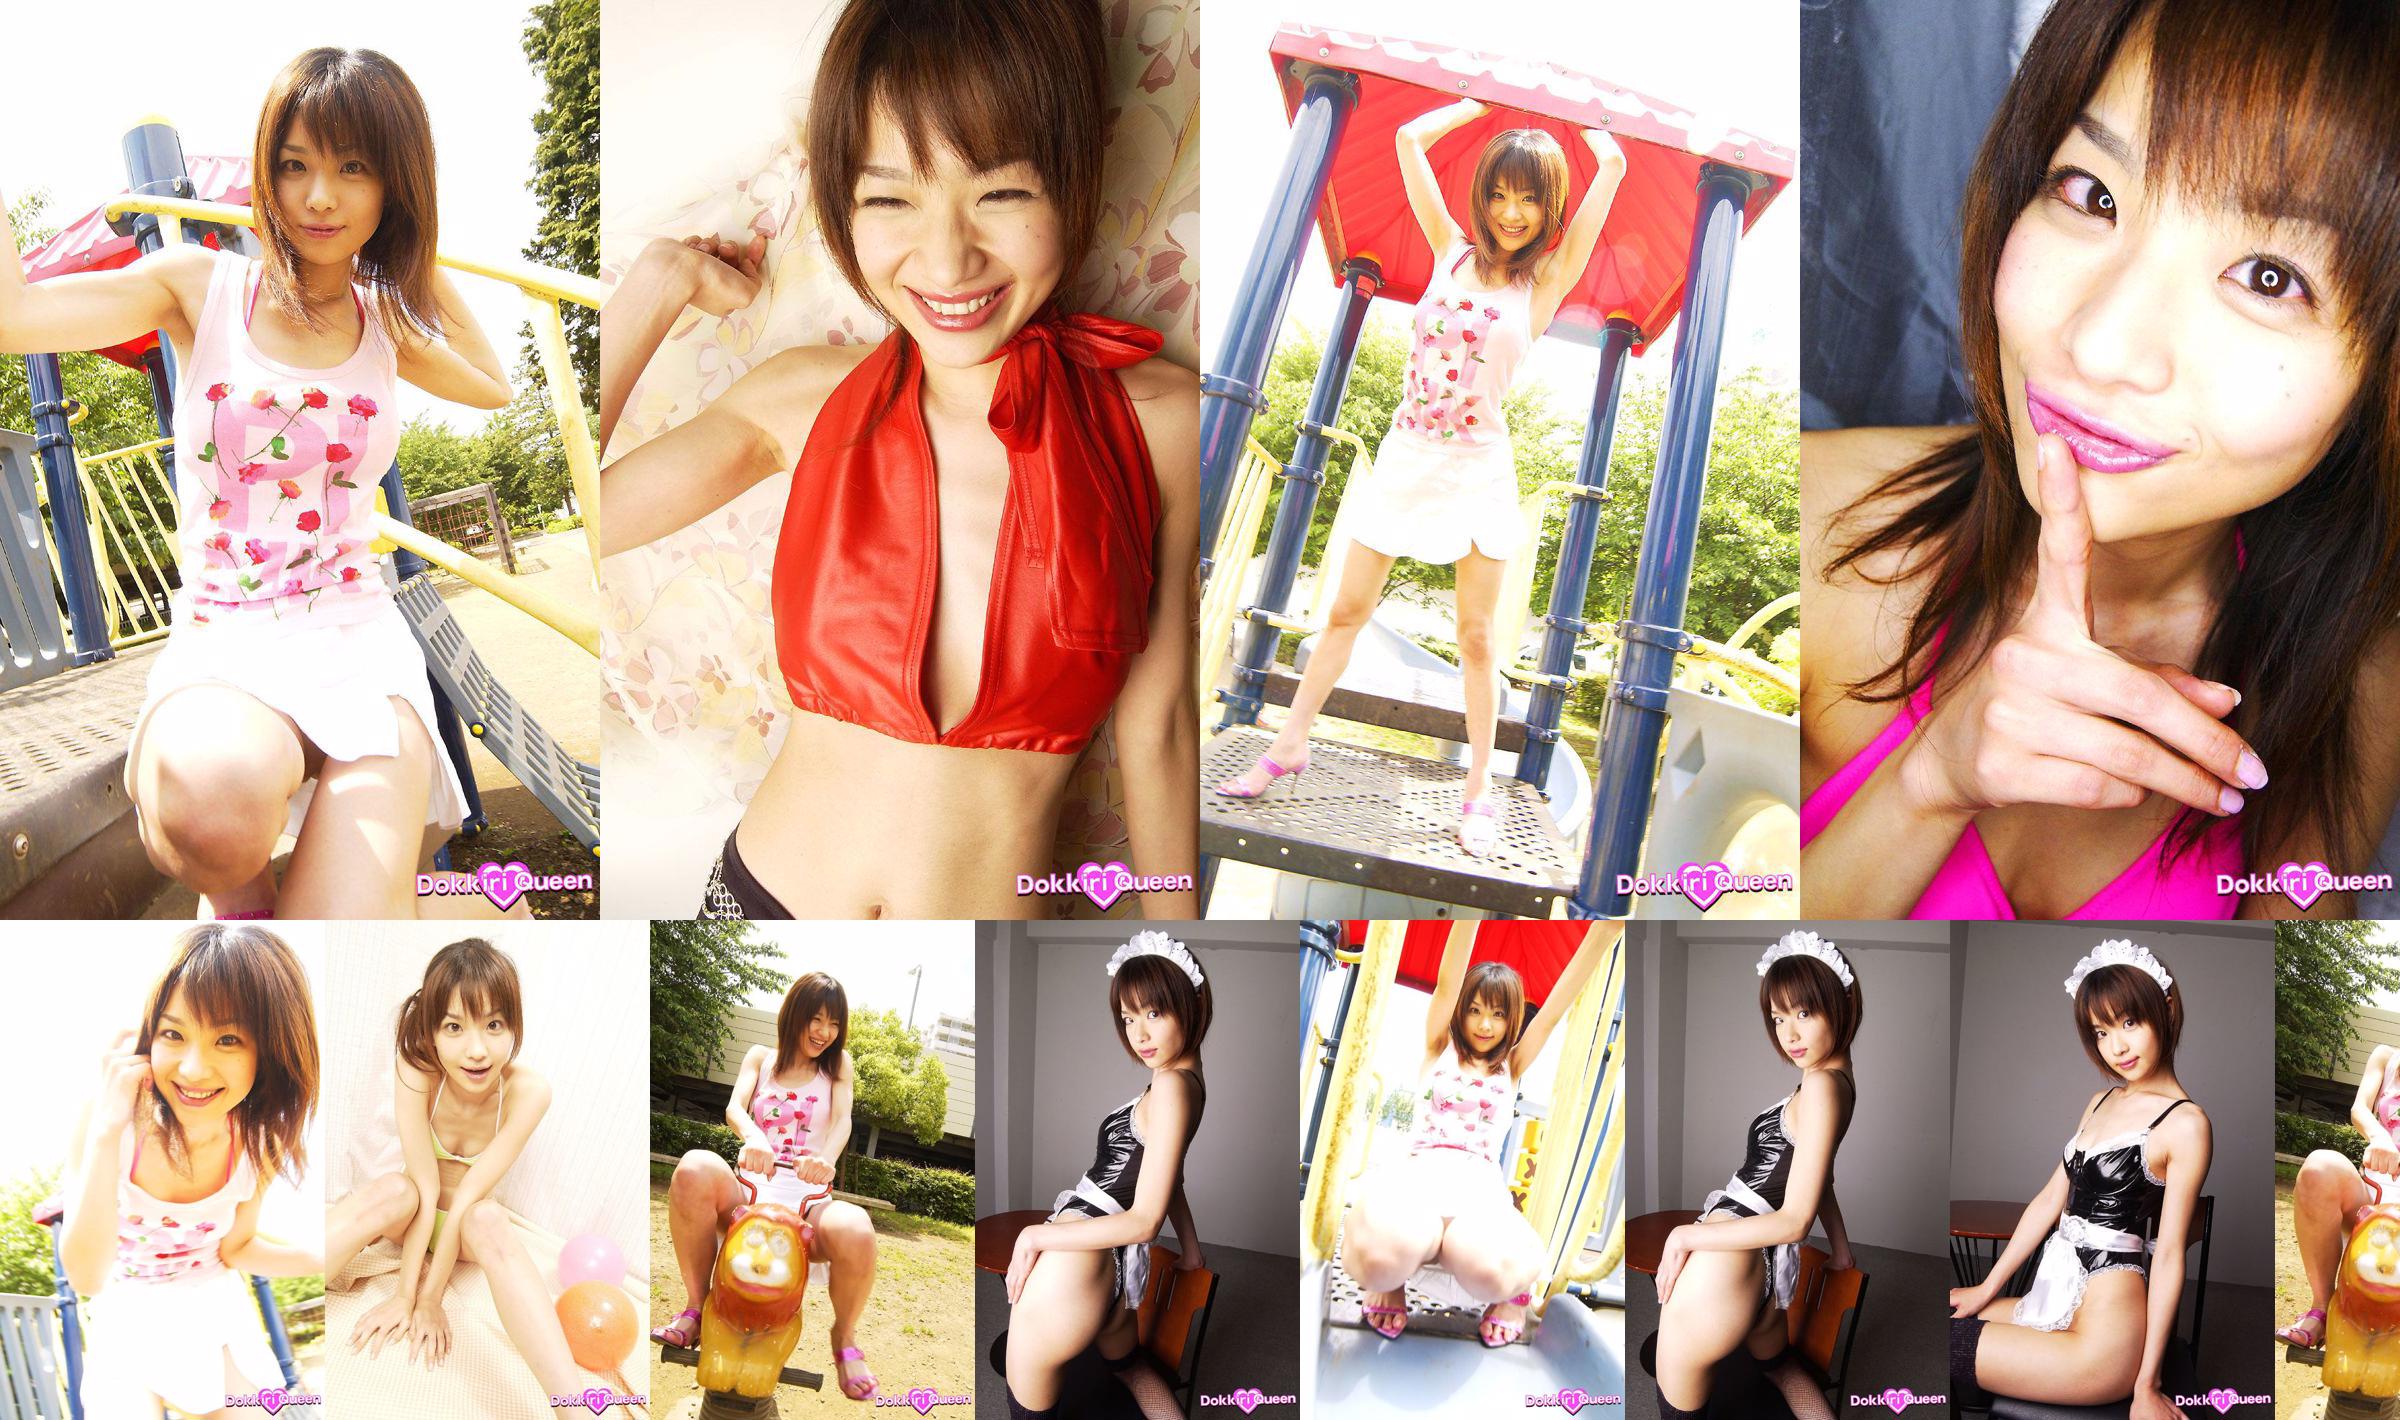 [X-City] Dokkiri Queen No.013 Aimi Aimi Profiel No.0b4c70 Pagina 1